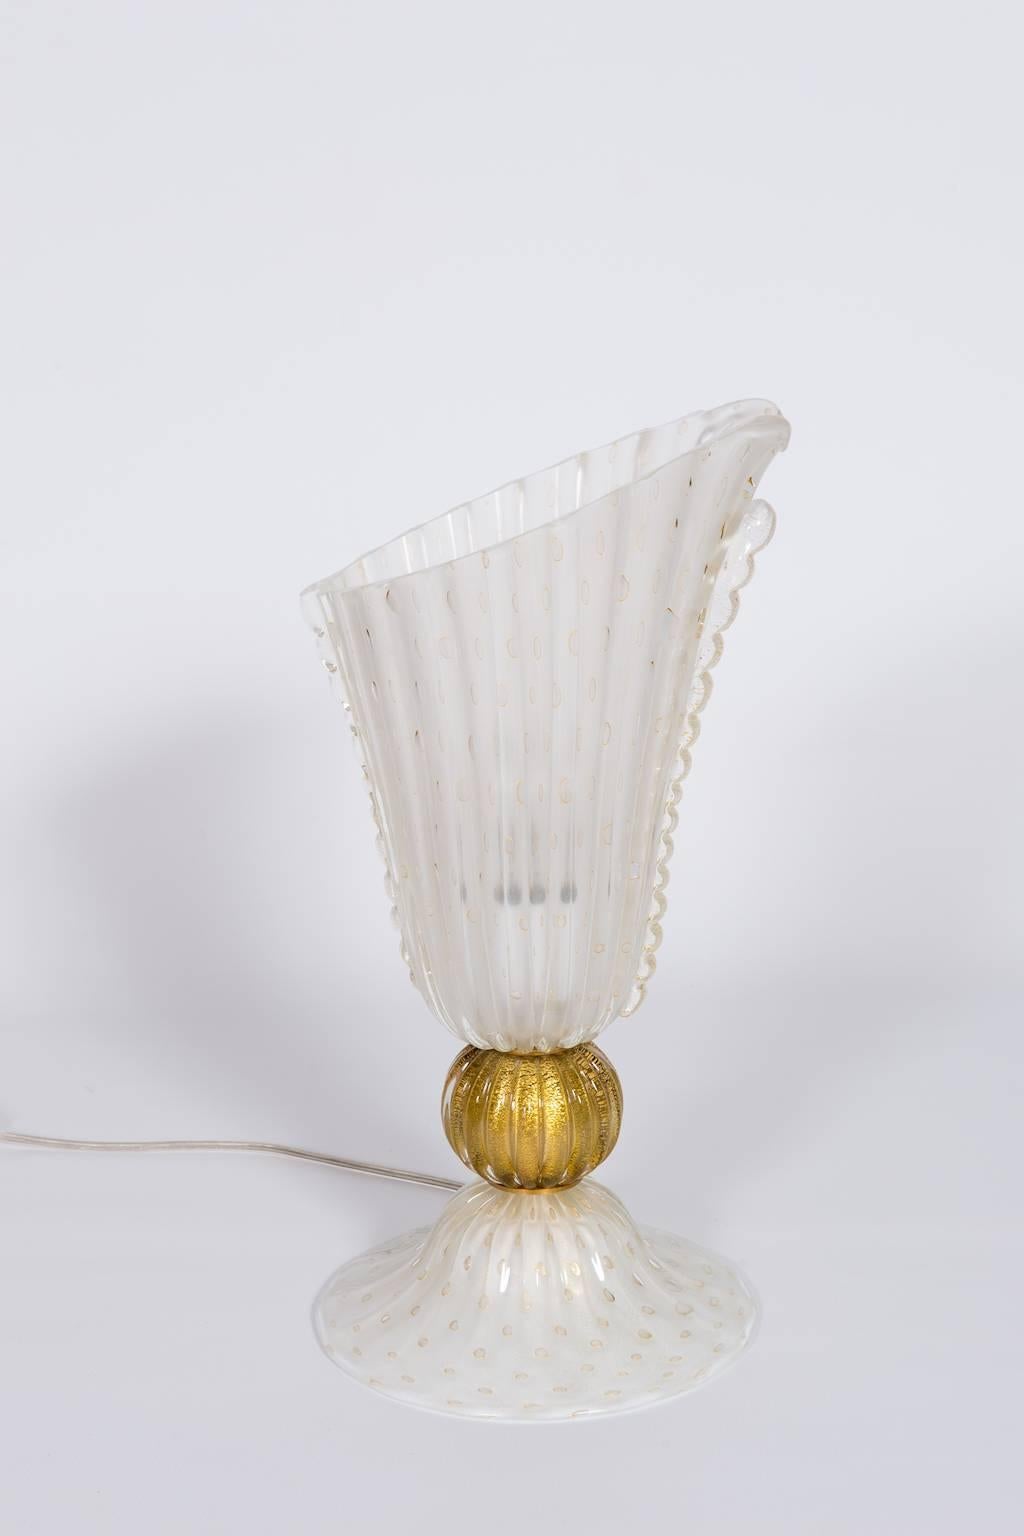 Einzigartige italienische Tischlampe aus mundgeblasenem Muranoglas in weißer Farbe und mit 24-karätigem Gold. 
Dieses herausragende Kunstwerk wurde in den 1970er Jahren vollständig auf der italienischen venezianischen Murano-Insel entworfen und